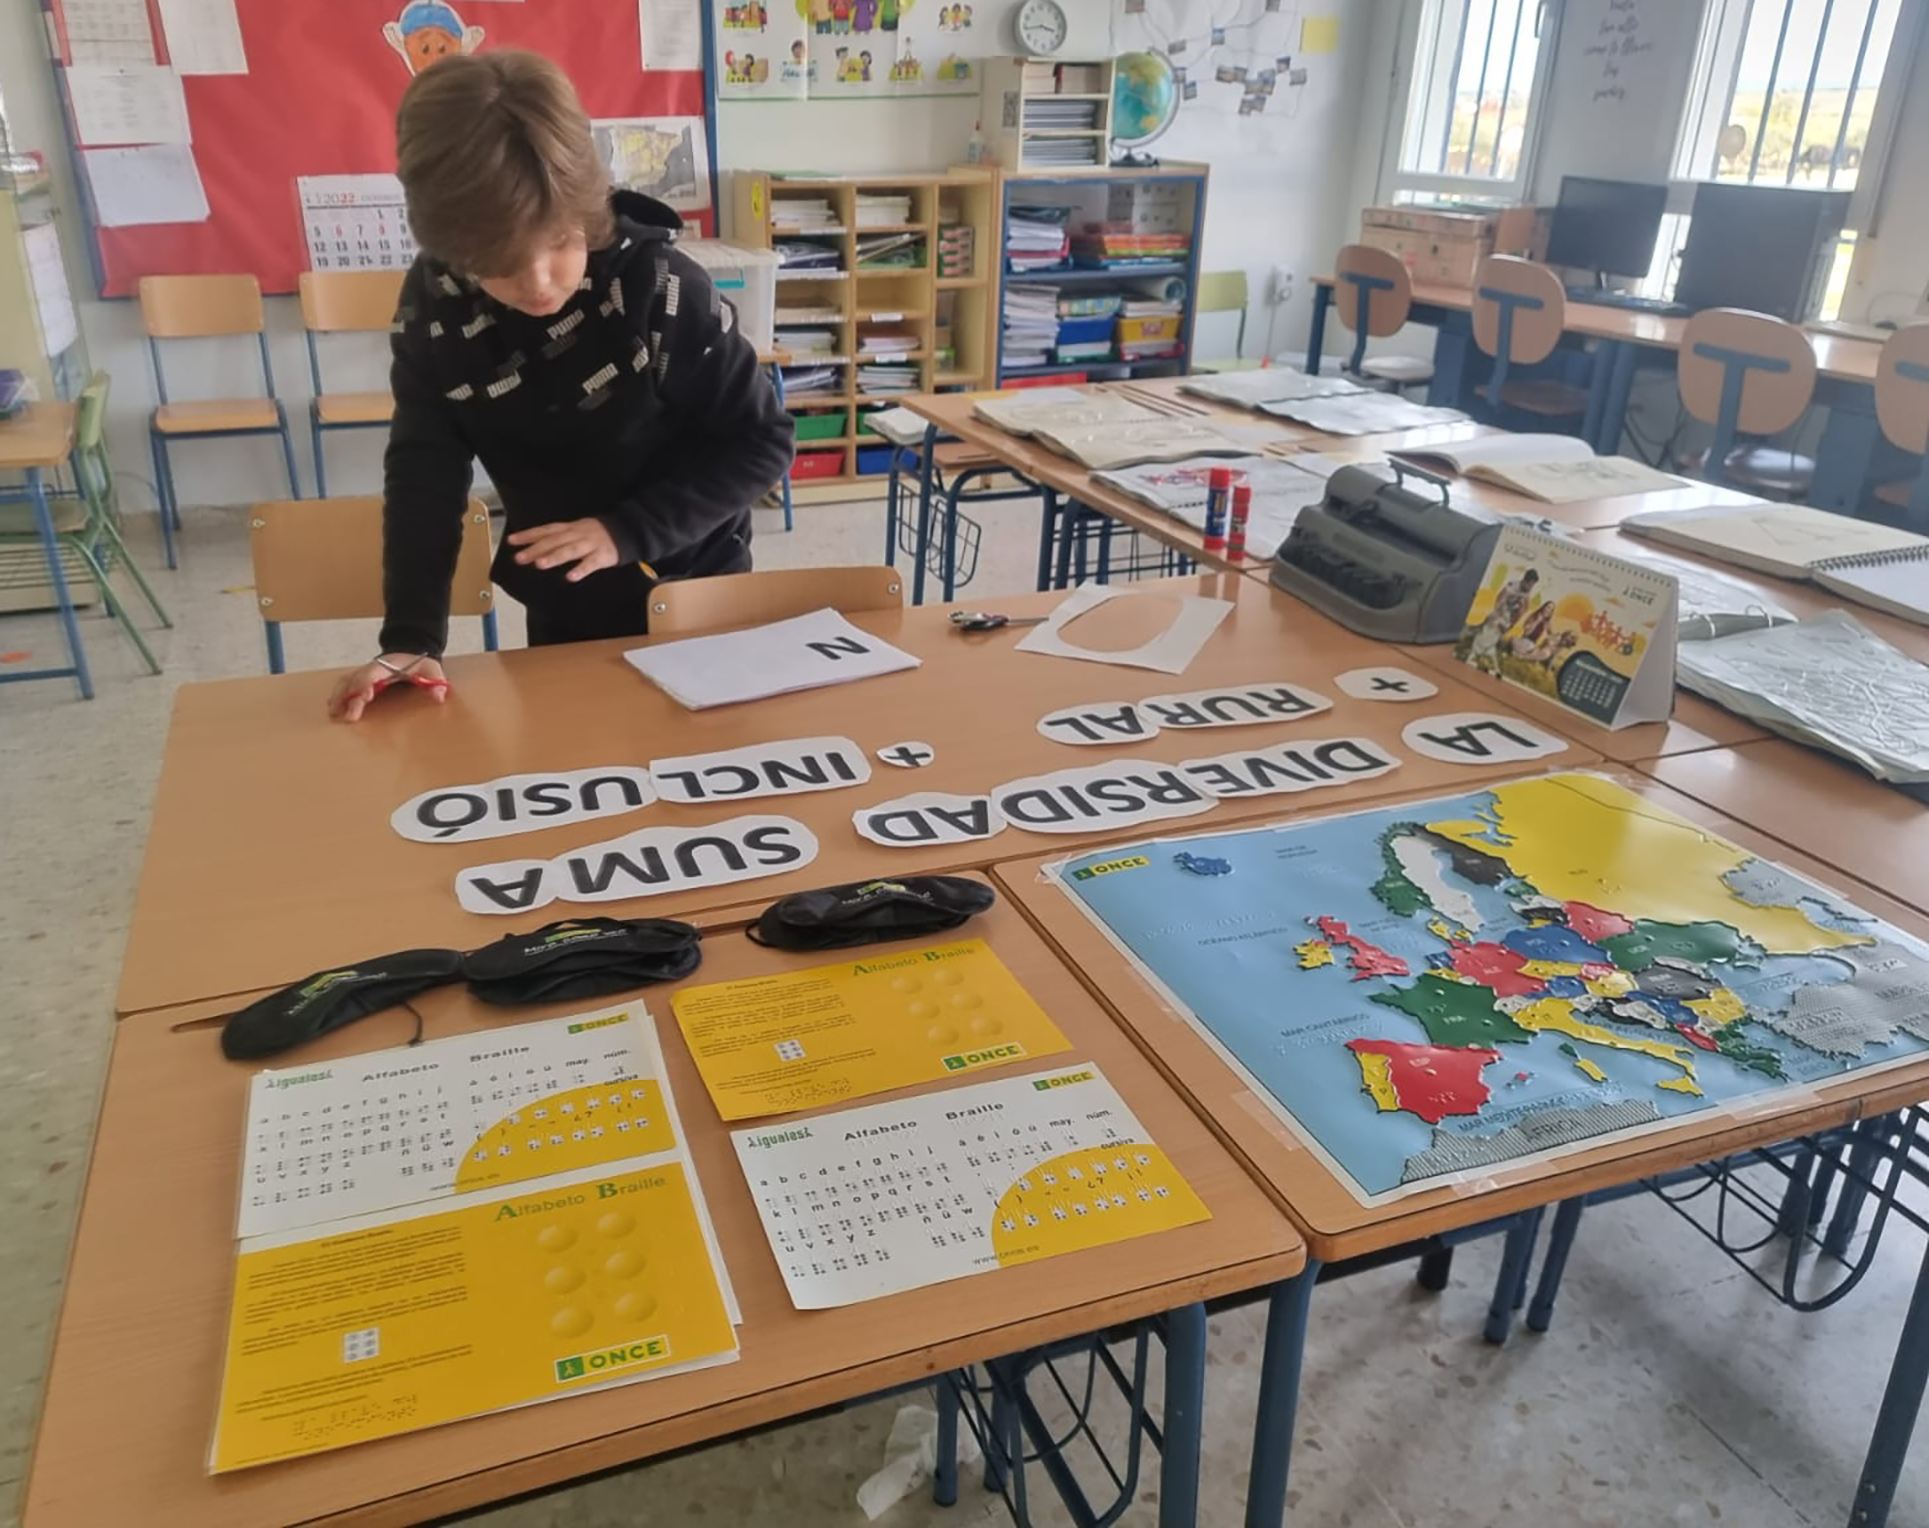 Joven escolar en un aula, trabajando con material didáctico de ONCE: hay un mapa de Europa y láminas de alfabeto braille. También está trabajando con un eslogan que dice "La diversidad suma". En otros papeles aparecen escritas las palabras "rural" e "inclusión".